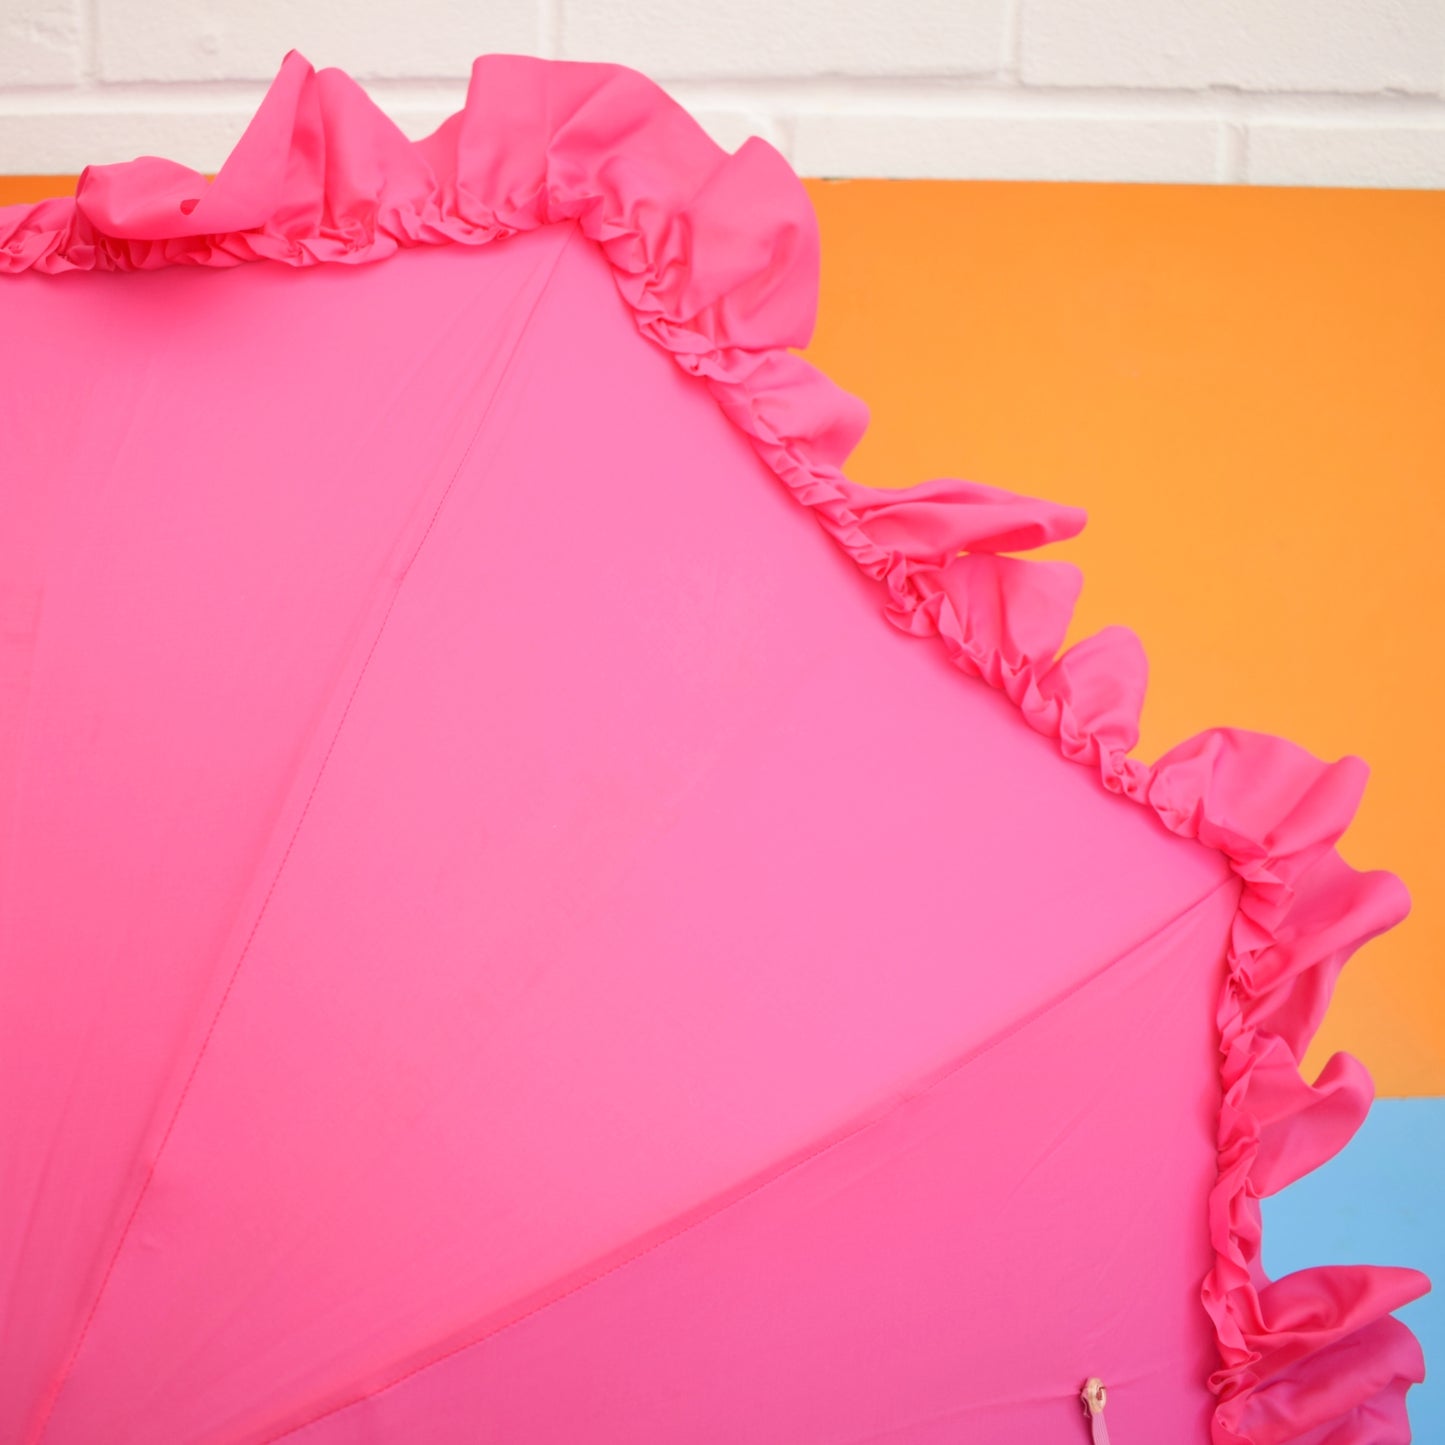 Vintage 1960s Umbrella / Parasol - Frilled - Pink